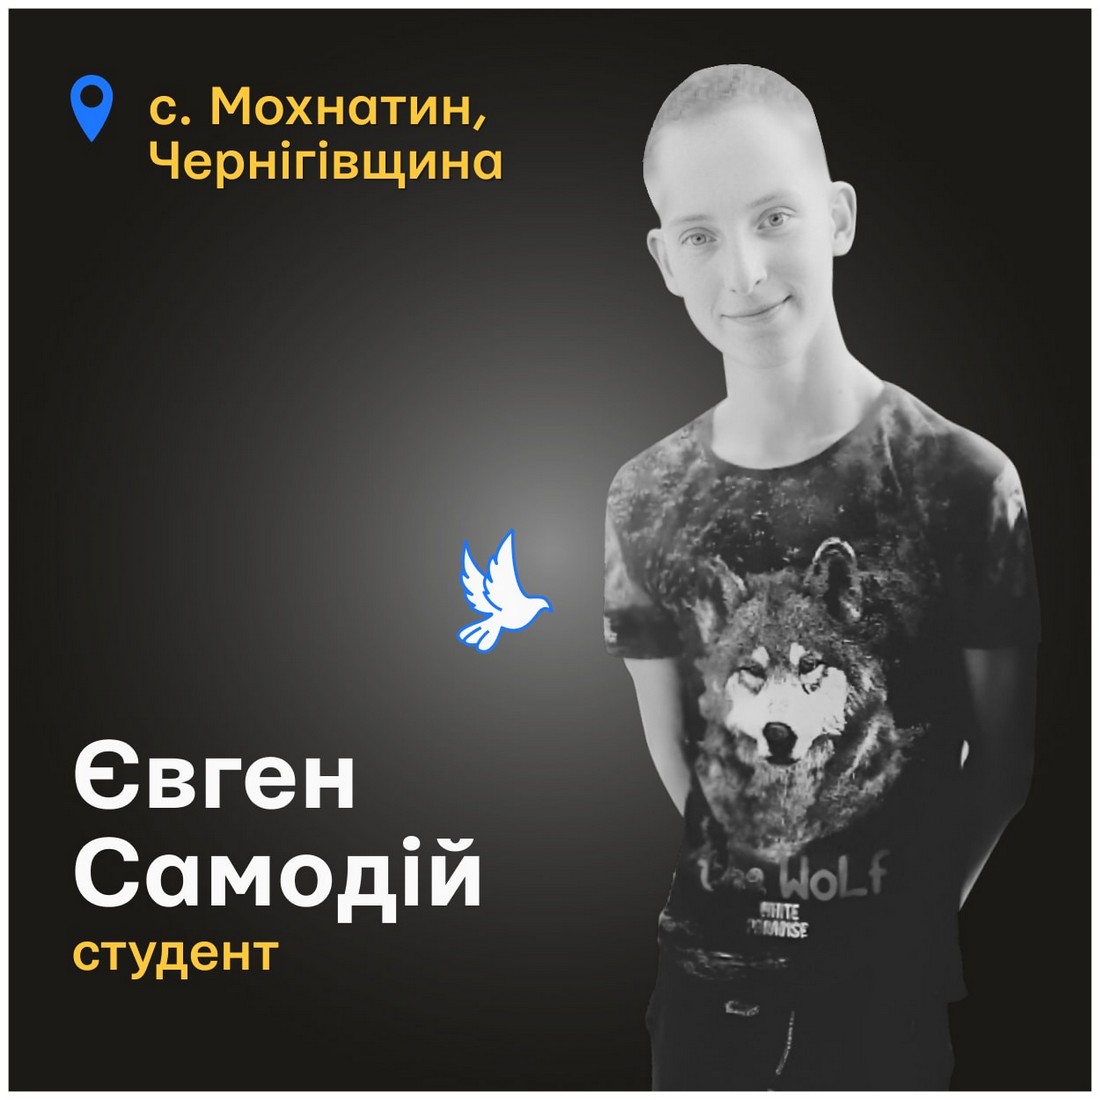 Меморіал: вбиті росією. Євген Самоїд, 17 років, Чернігівщина, березень